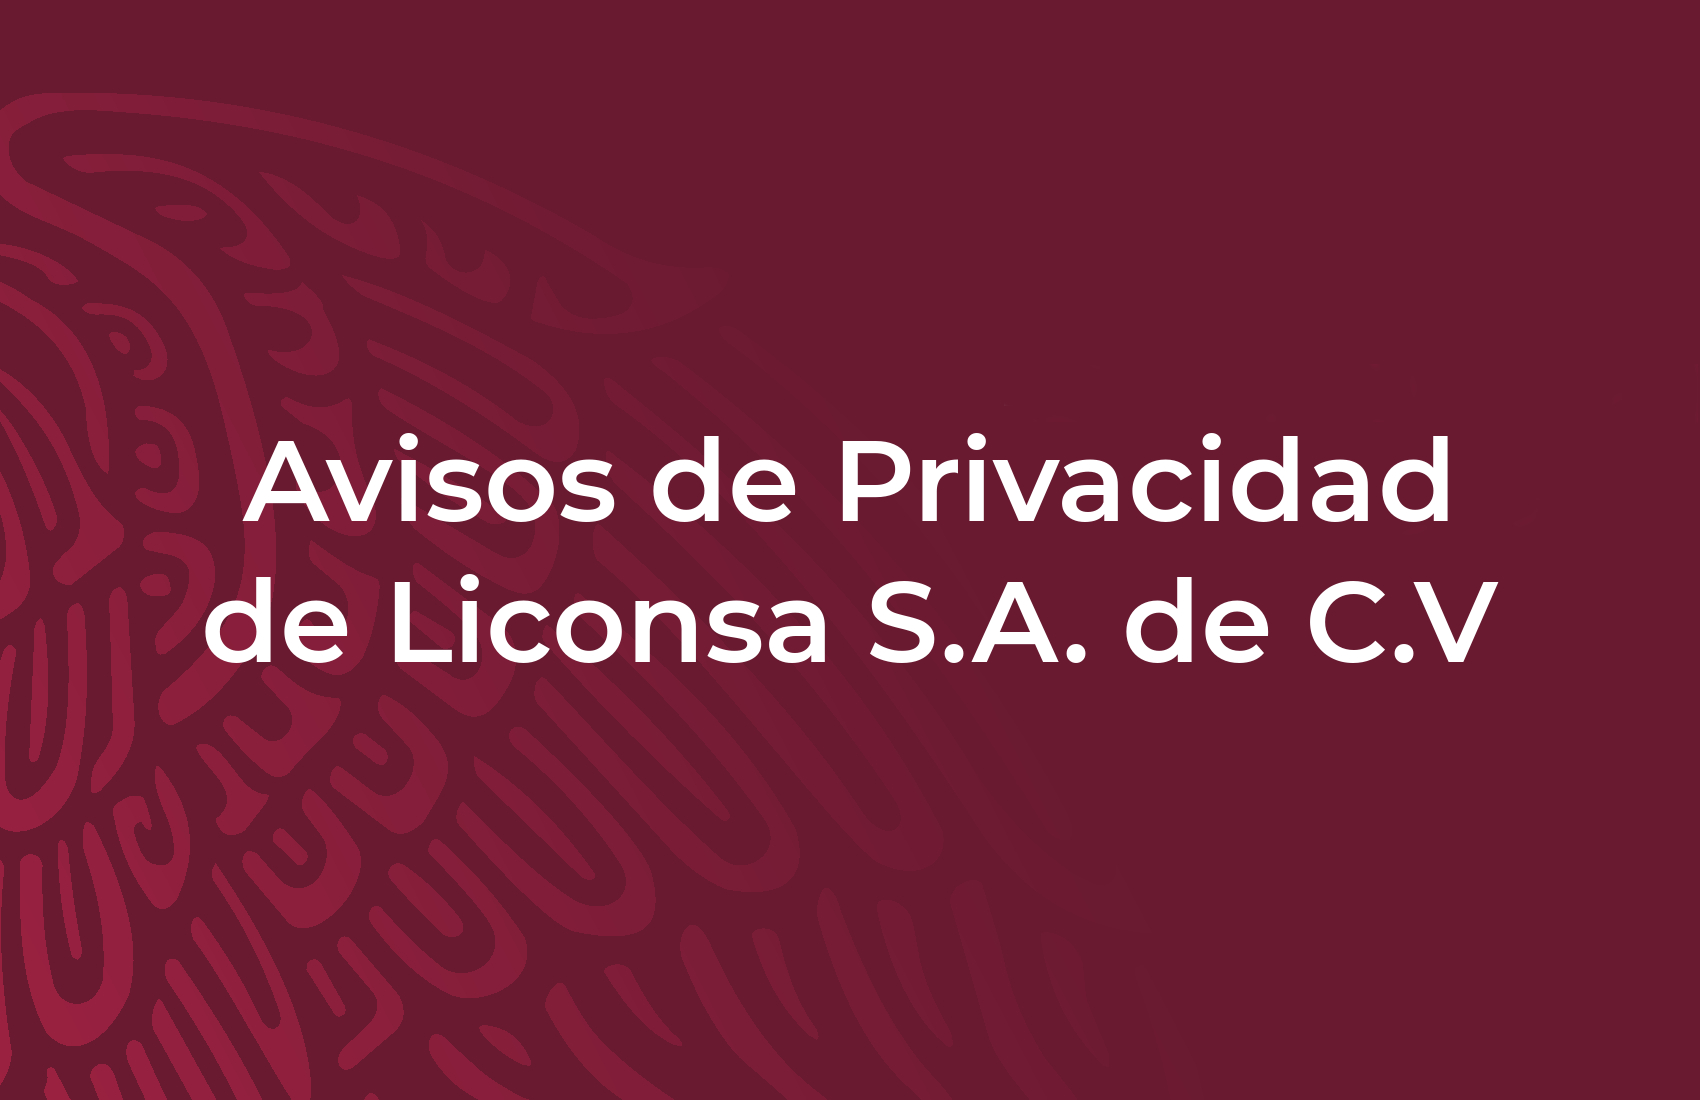 Avisos de Privacidad de Liconsa S.A. de C.V